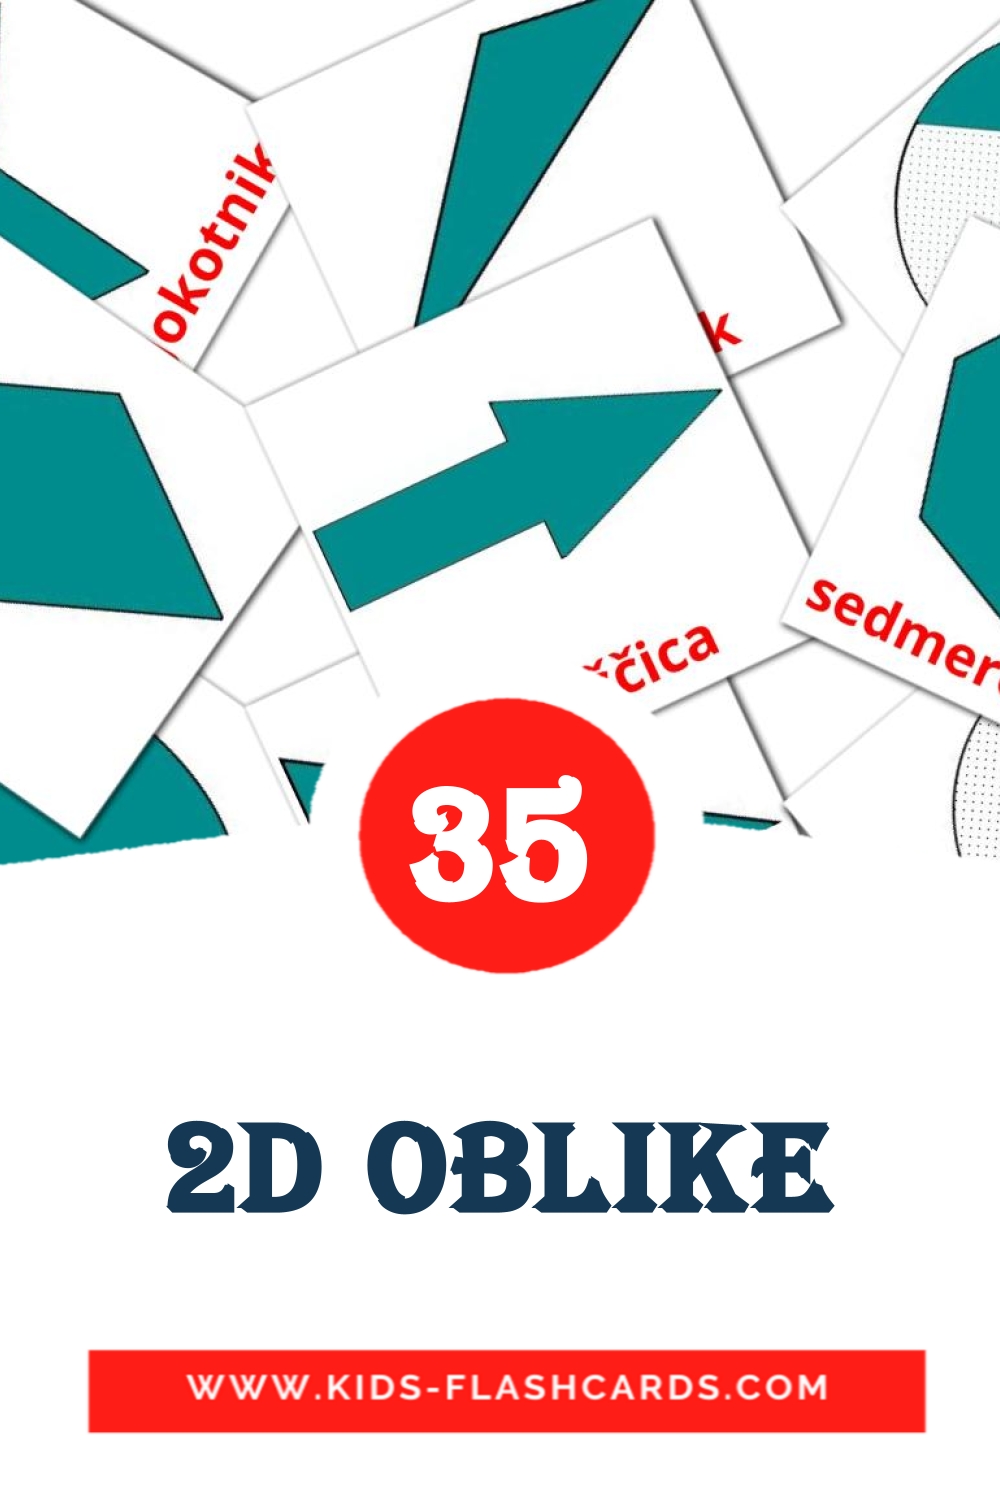 2D oblike на словенском для Детского Сада (35 карточек)